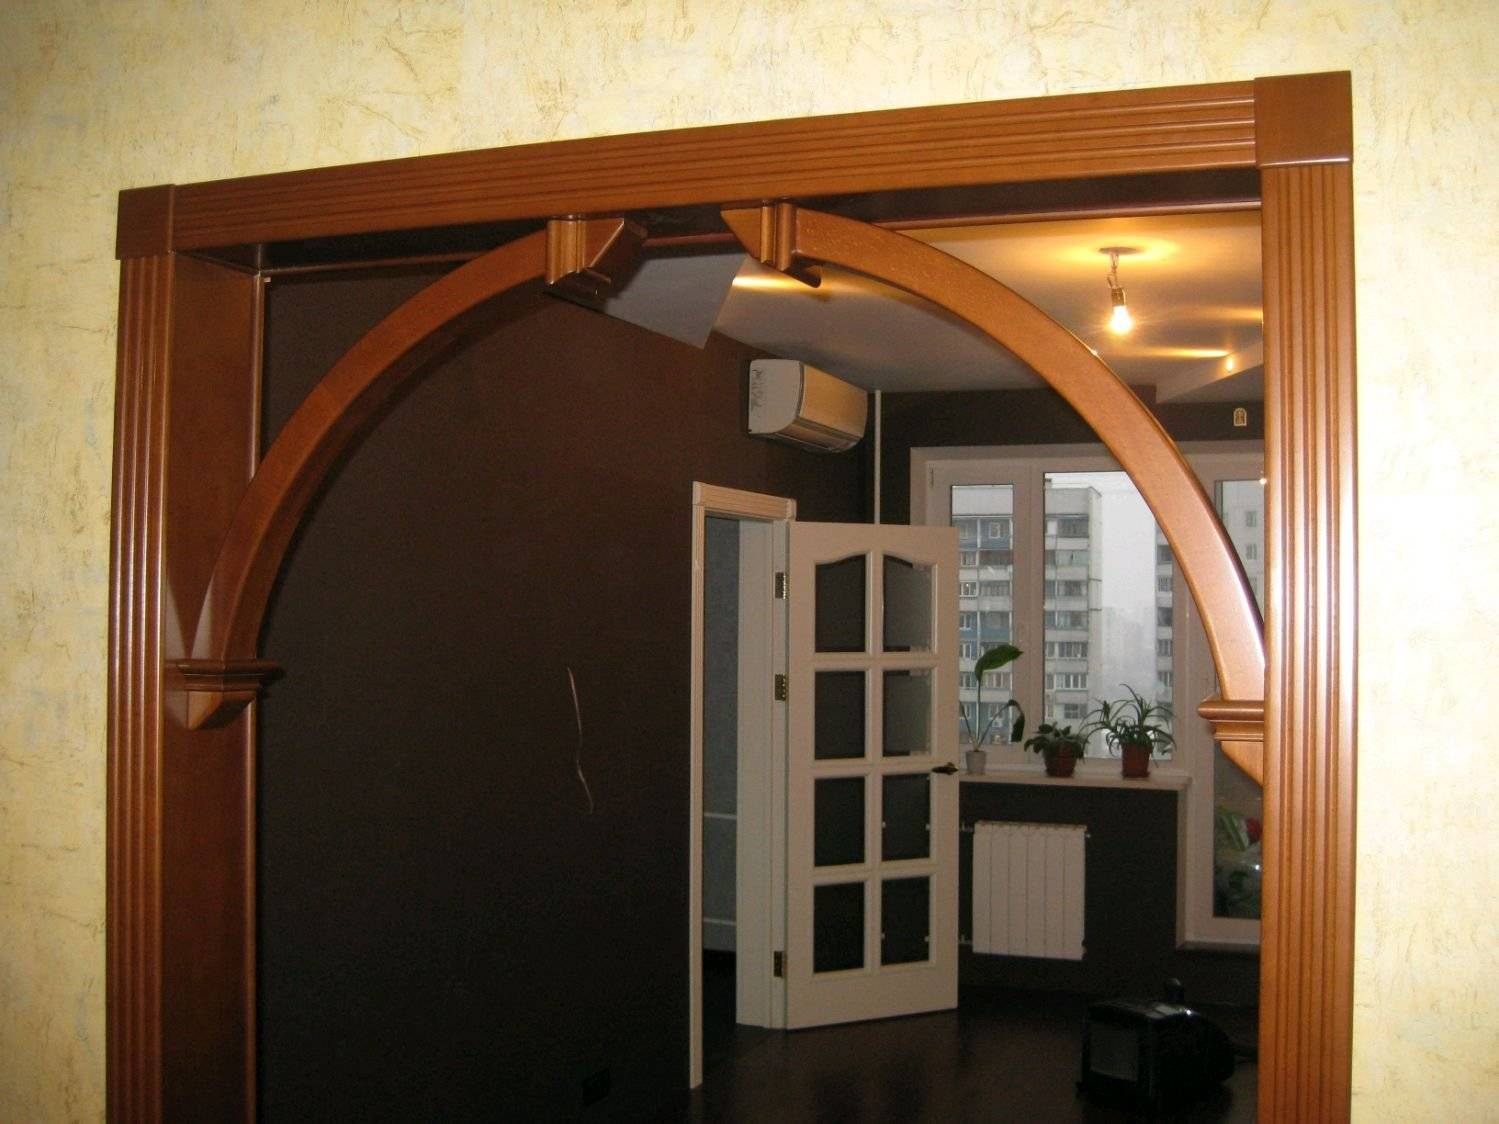 Фото идеи красивых деревянных и гипсокартонных межкомнатных арок